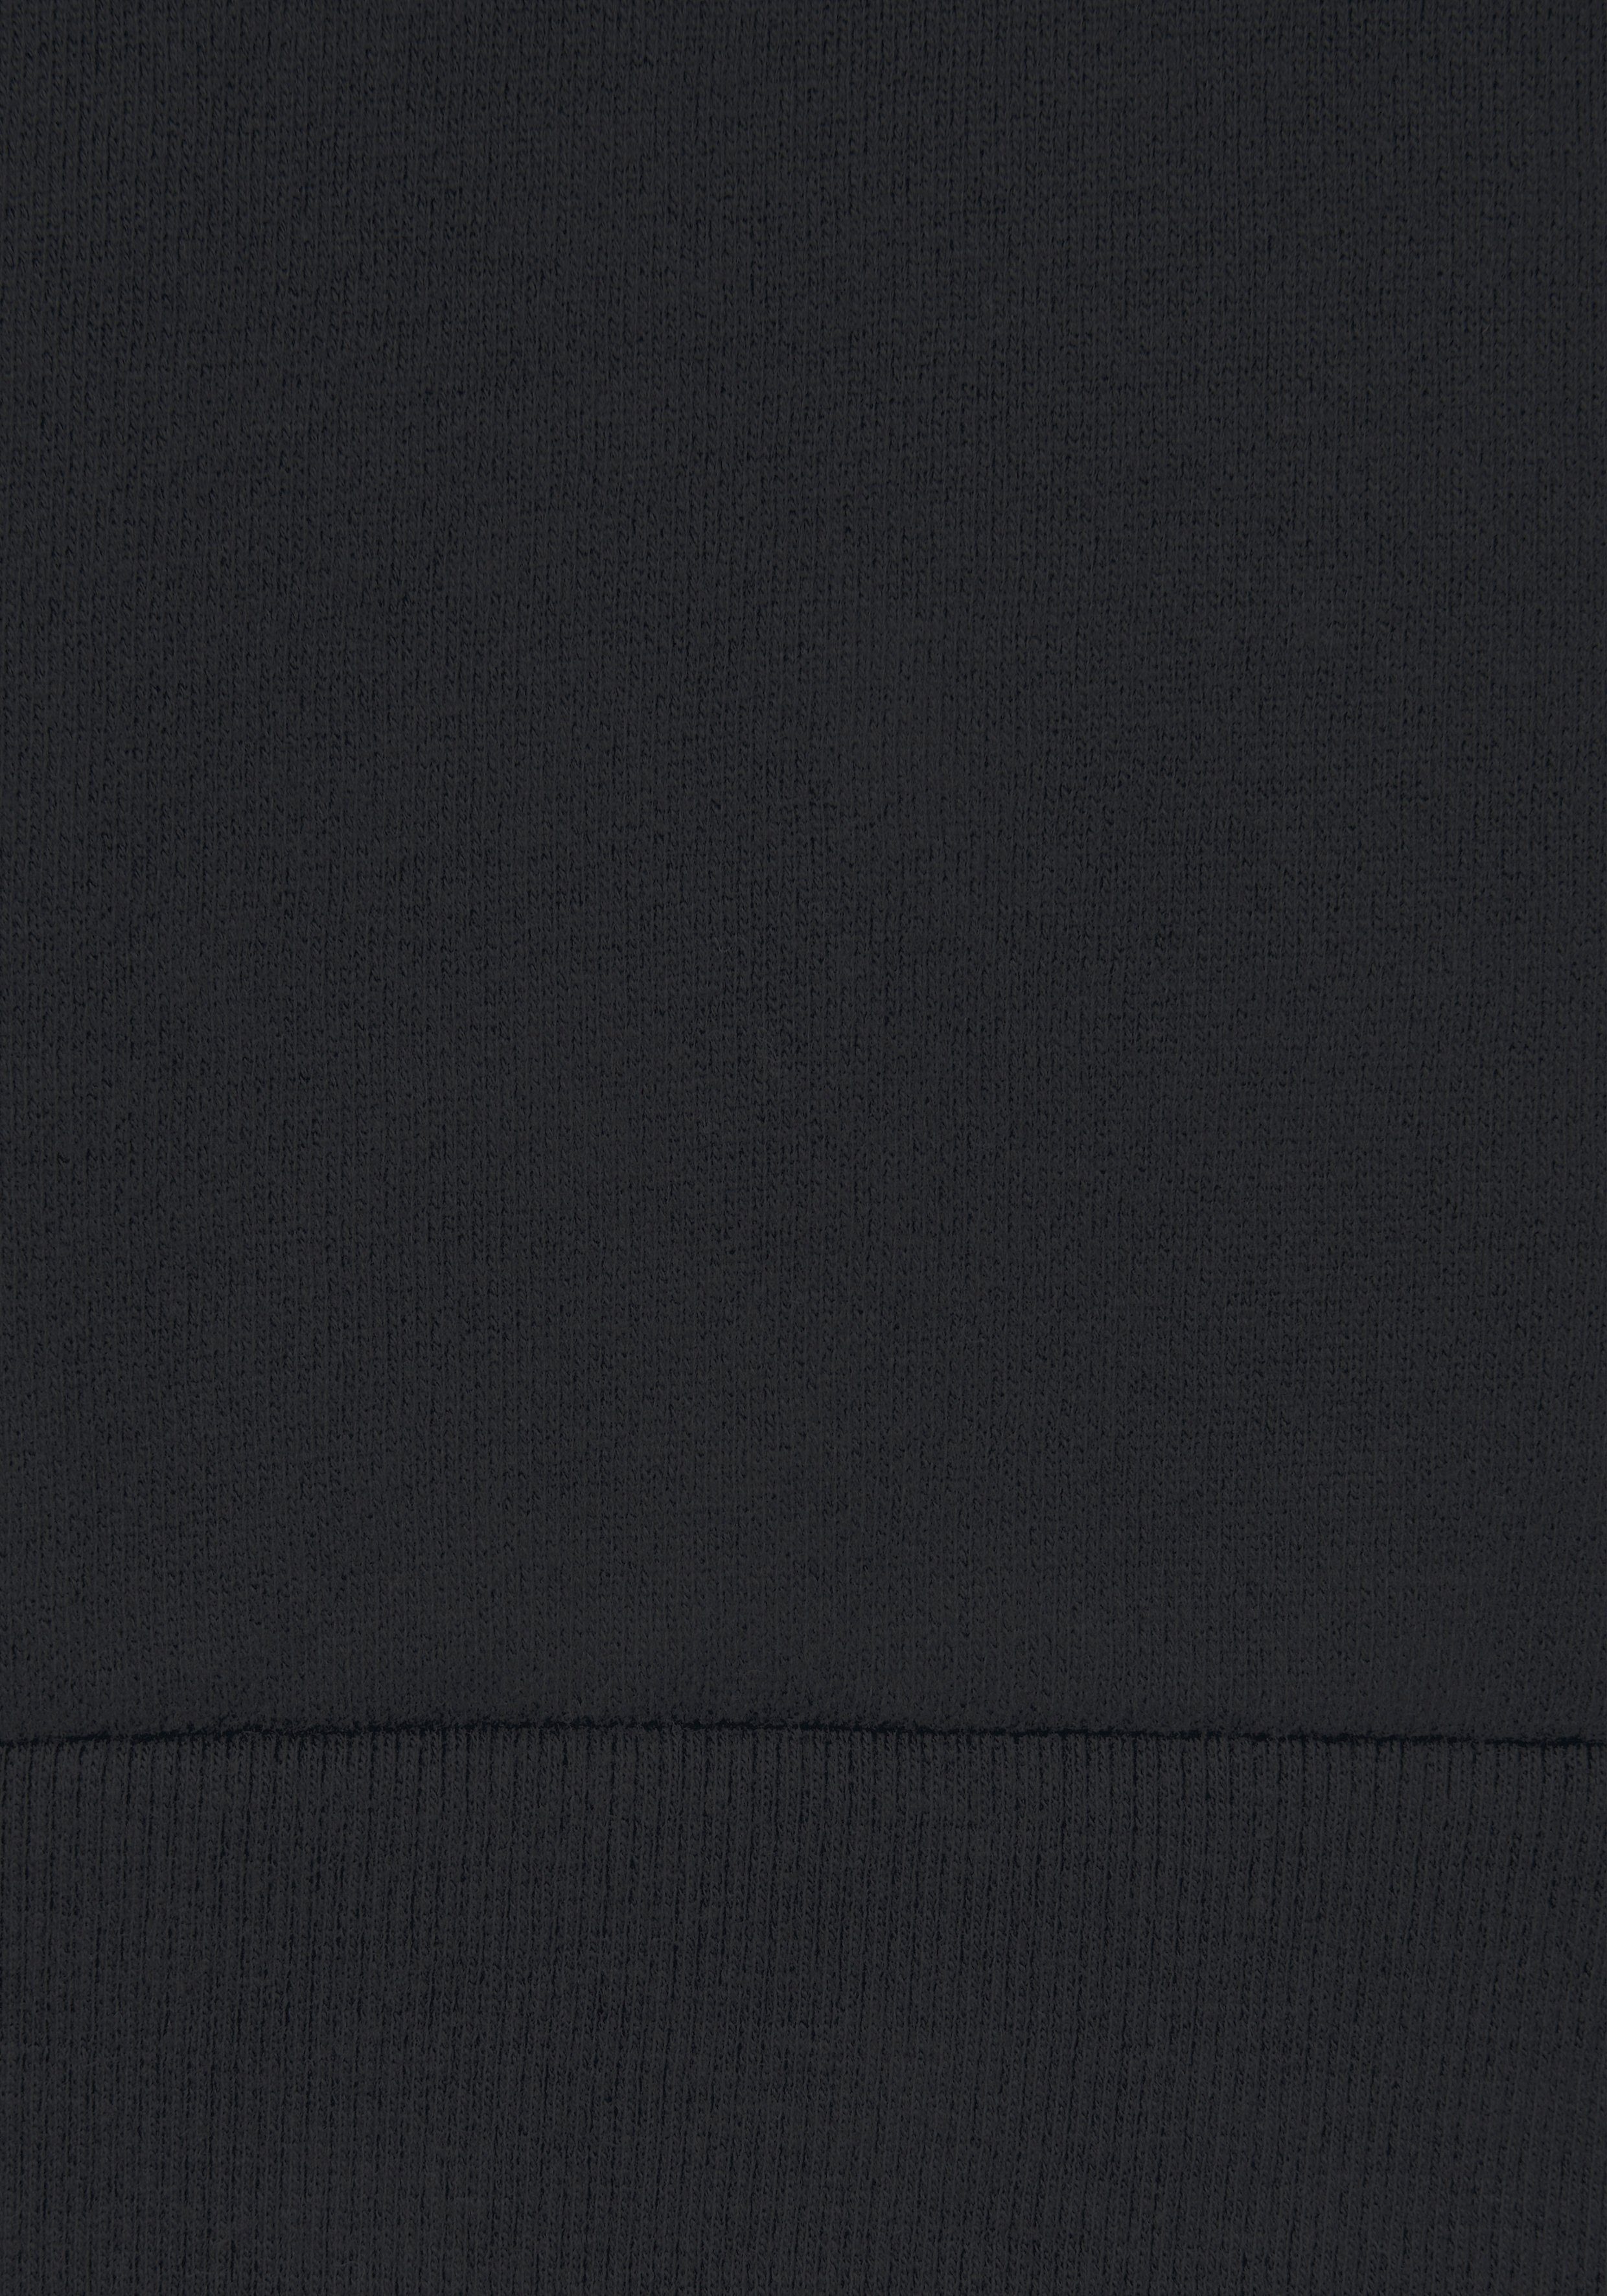 glänzendem mit Loungewear Logodruck, -Loungeshirt Loungewear, schwarz Bench. Loungeanzug Sweatshirt